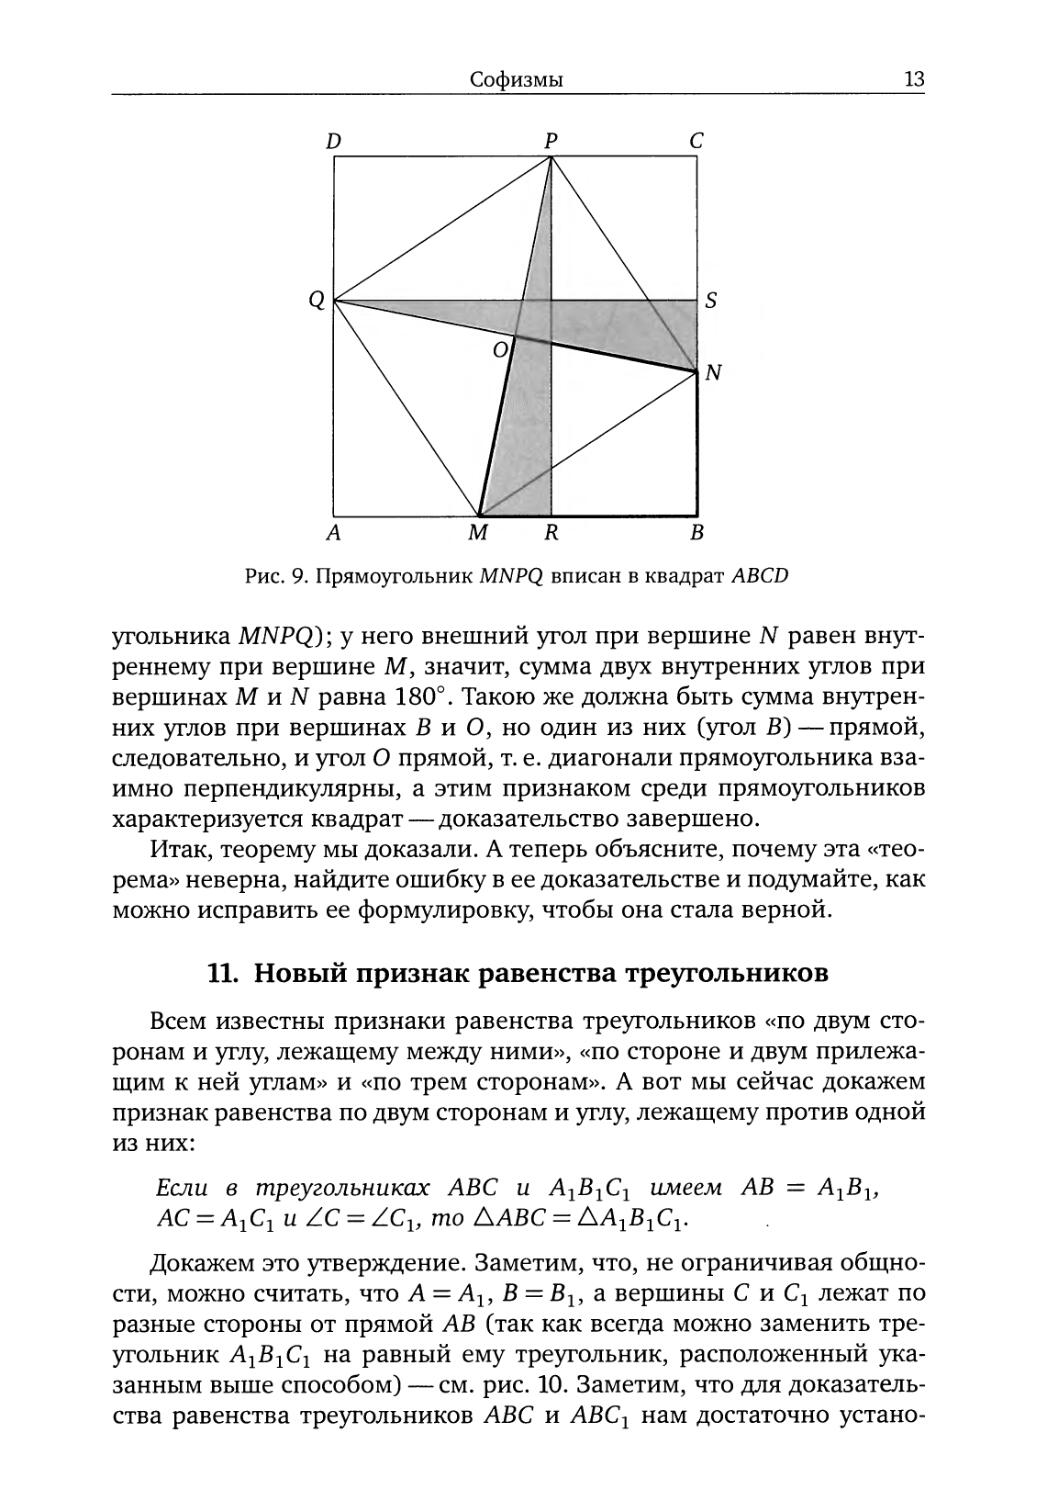 11. Новый признак равенства треугольников